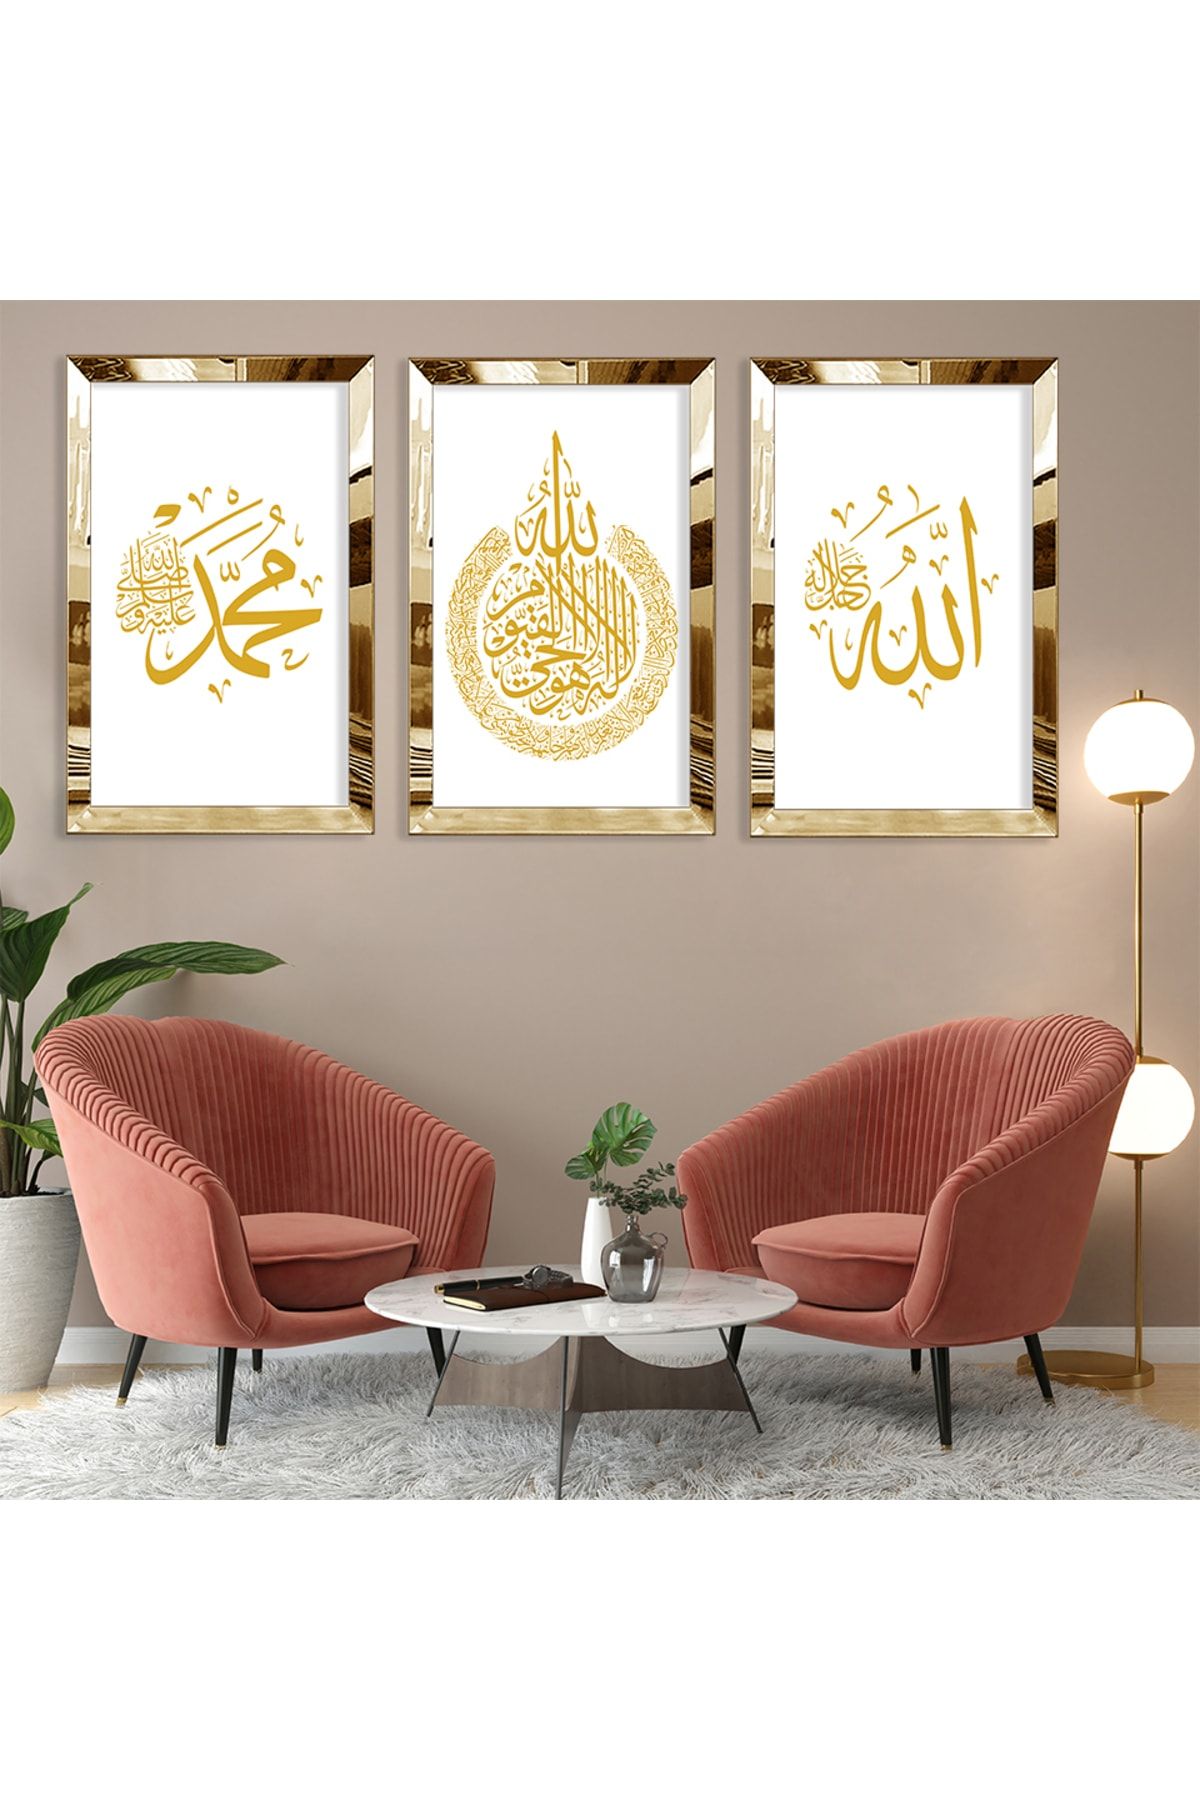 Zevahir Mobilya Dekorasyon Hz Muhammed Ve Allah Lafzı Gold Pleksi Kenar 3'lü Mdf Tablo